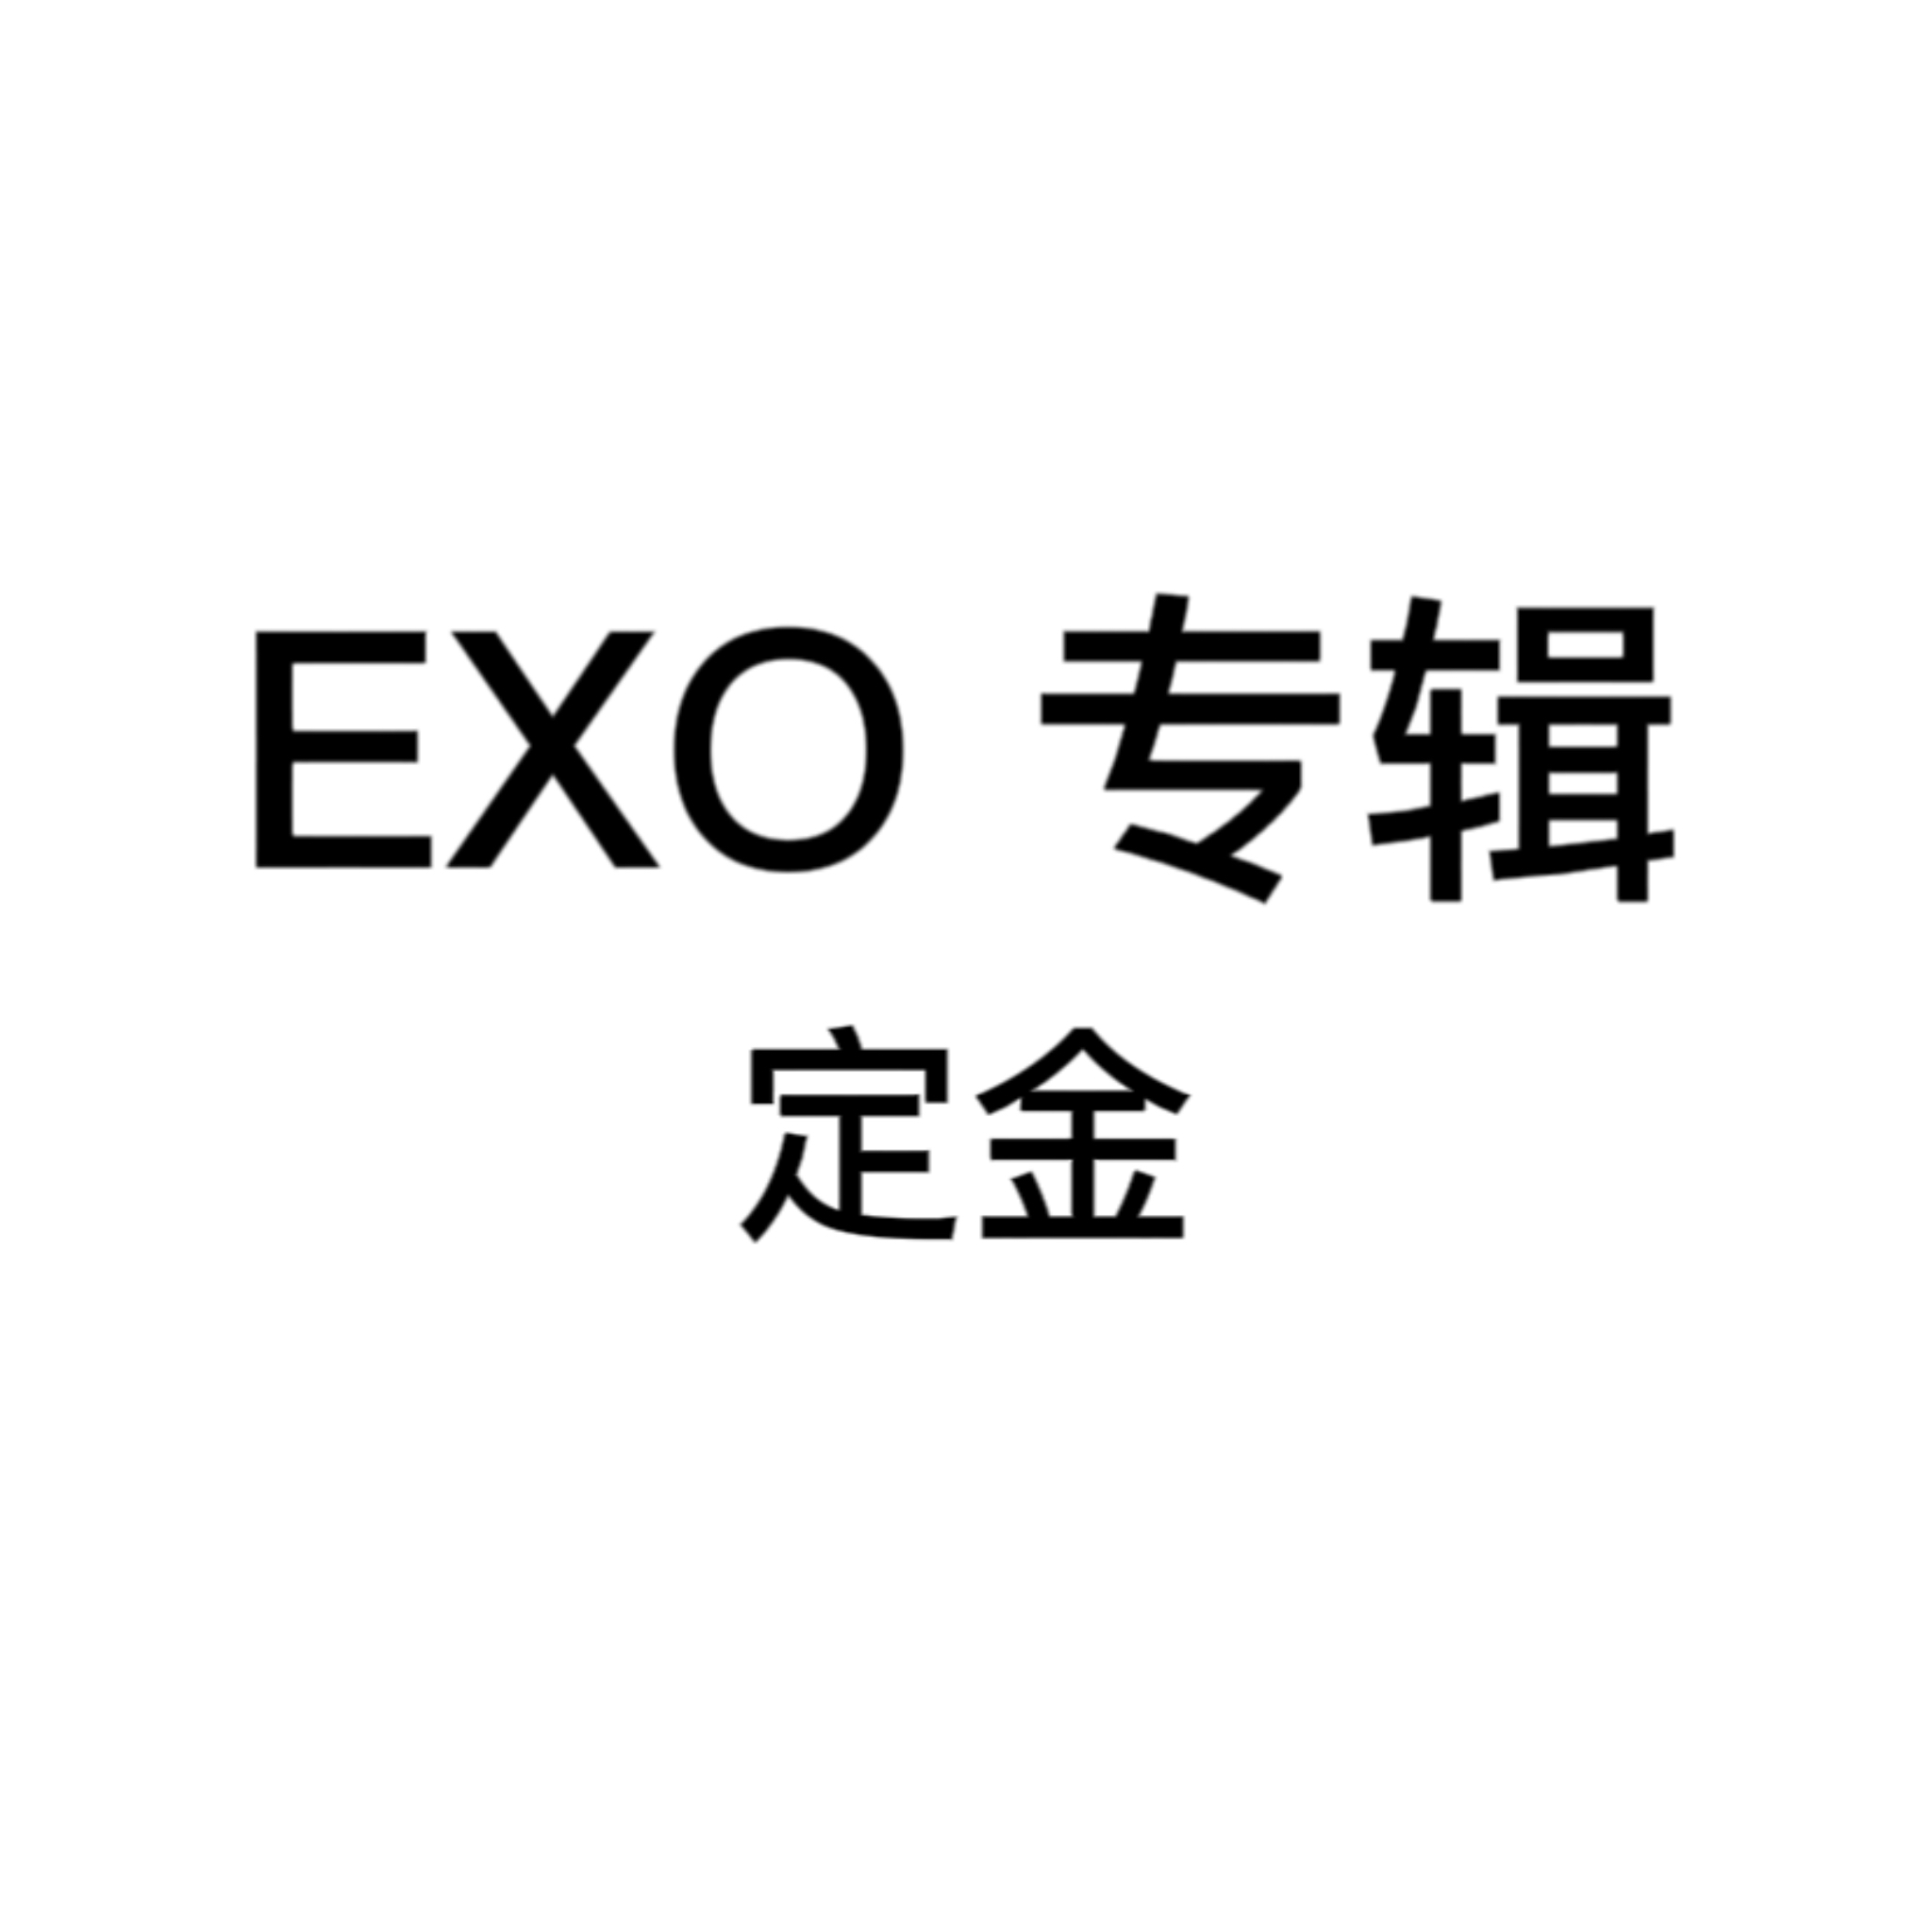 [定金] EXO - 正规7辑 [EXIST]_EXO_Elyxion_指示牌